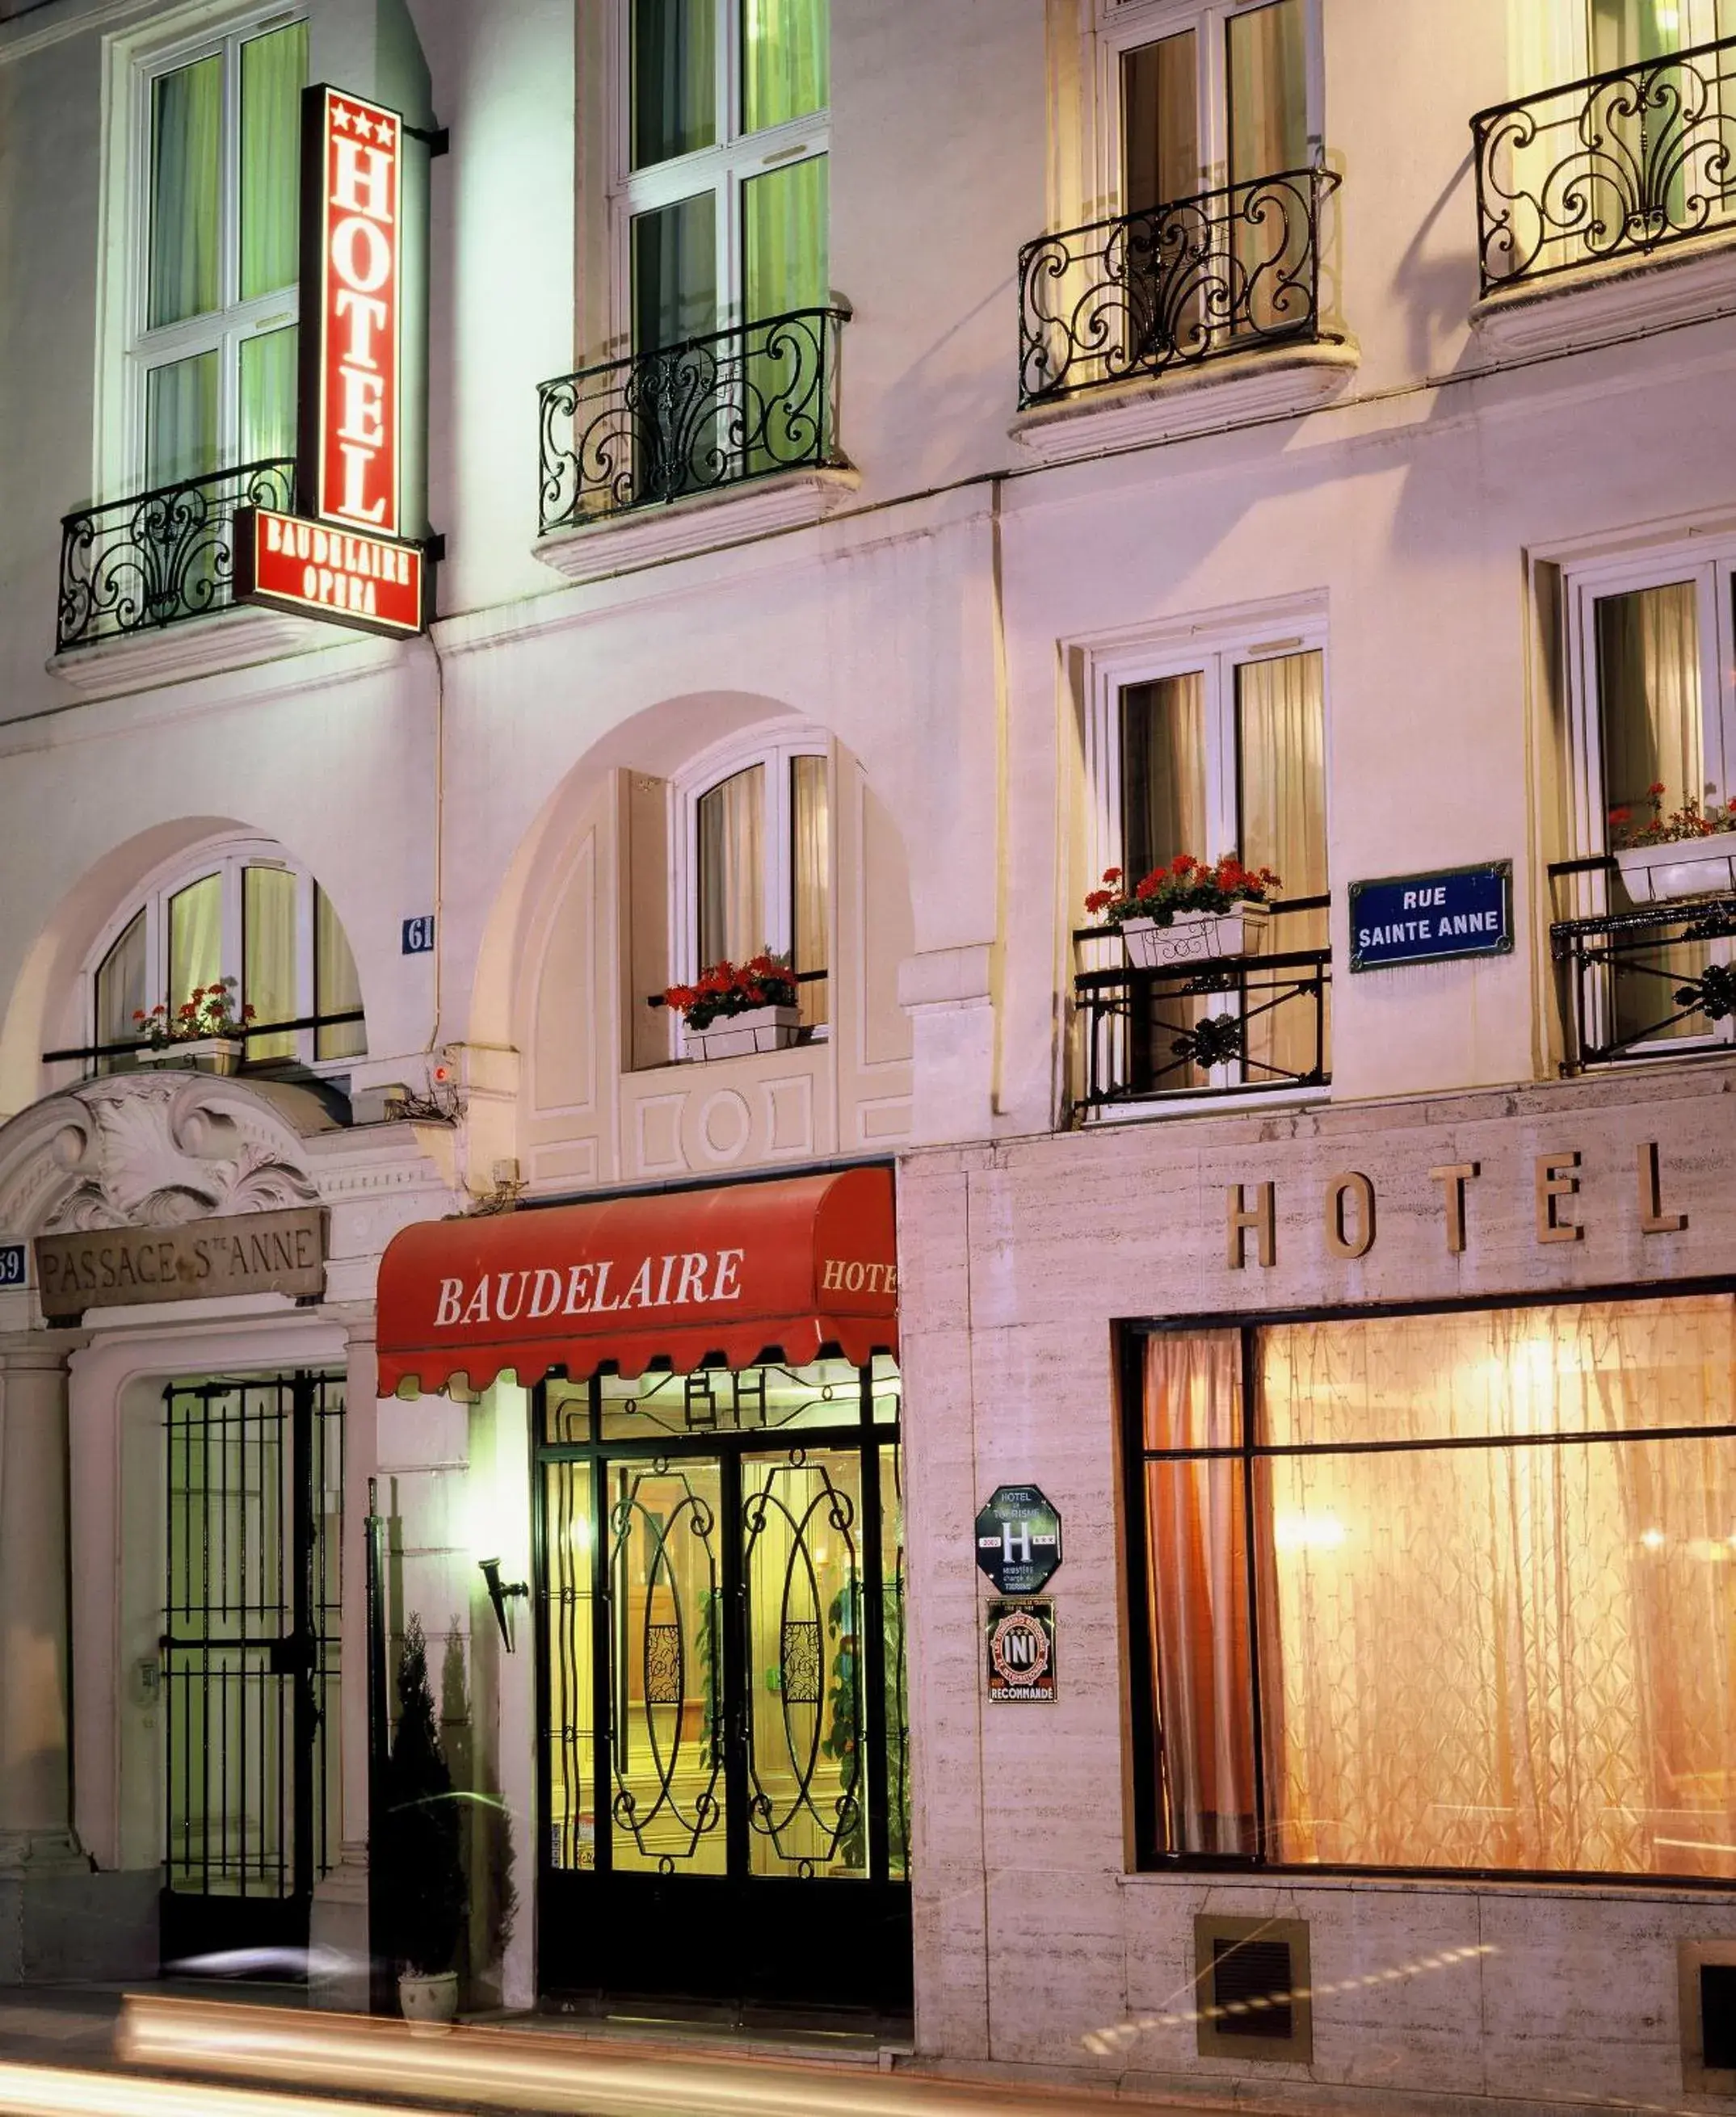 Property building in Hôtel Baudelaire Opéra